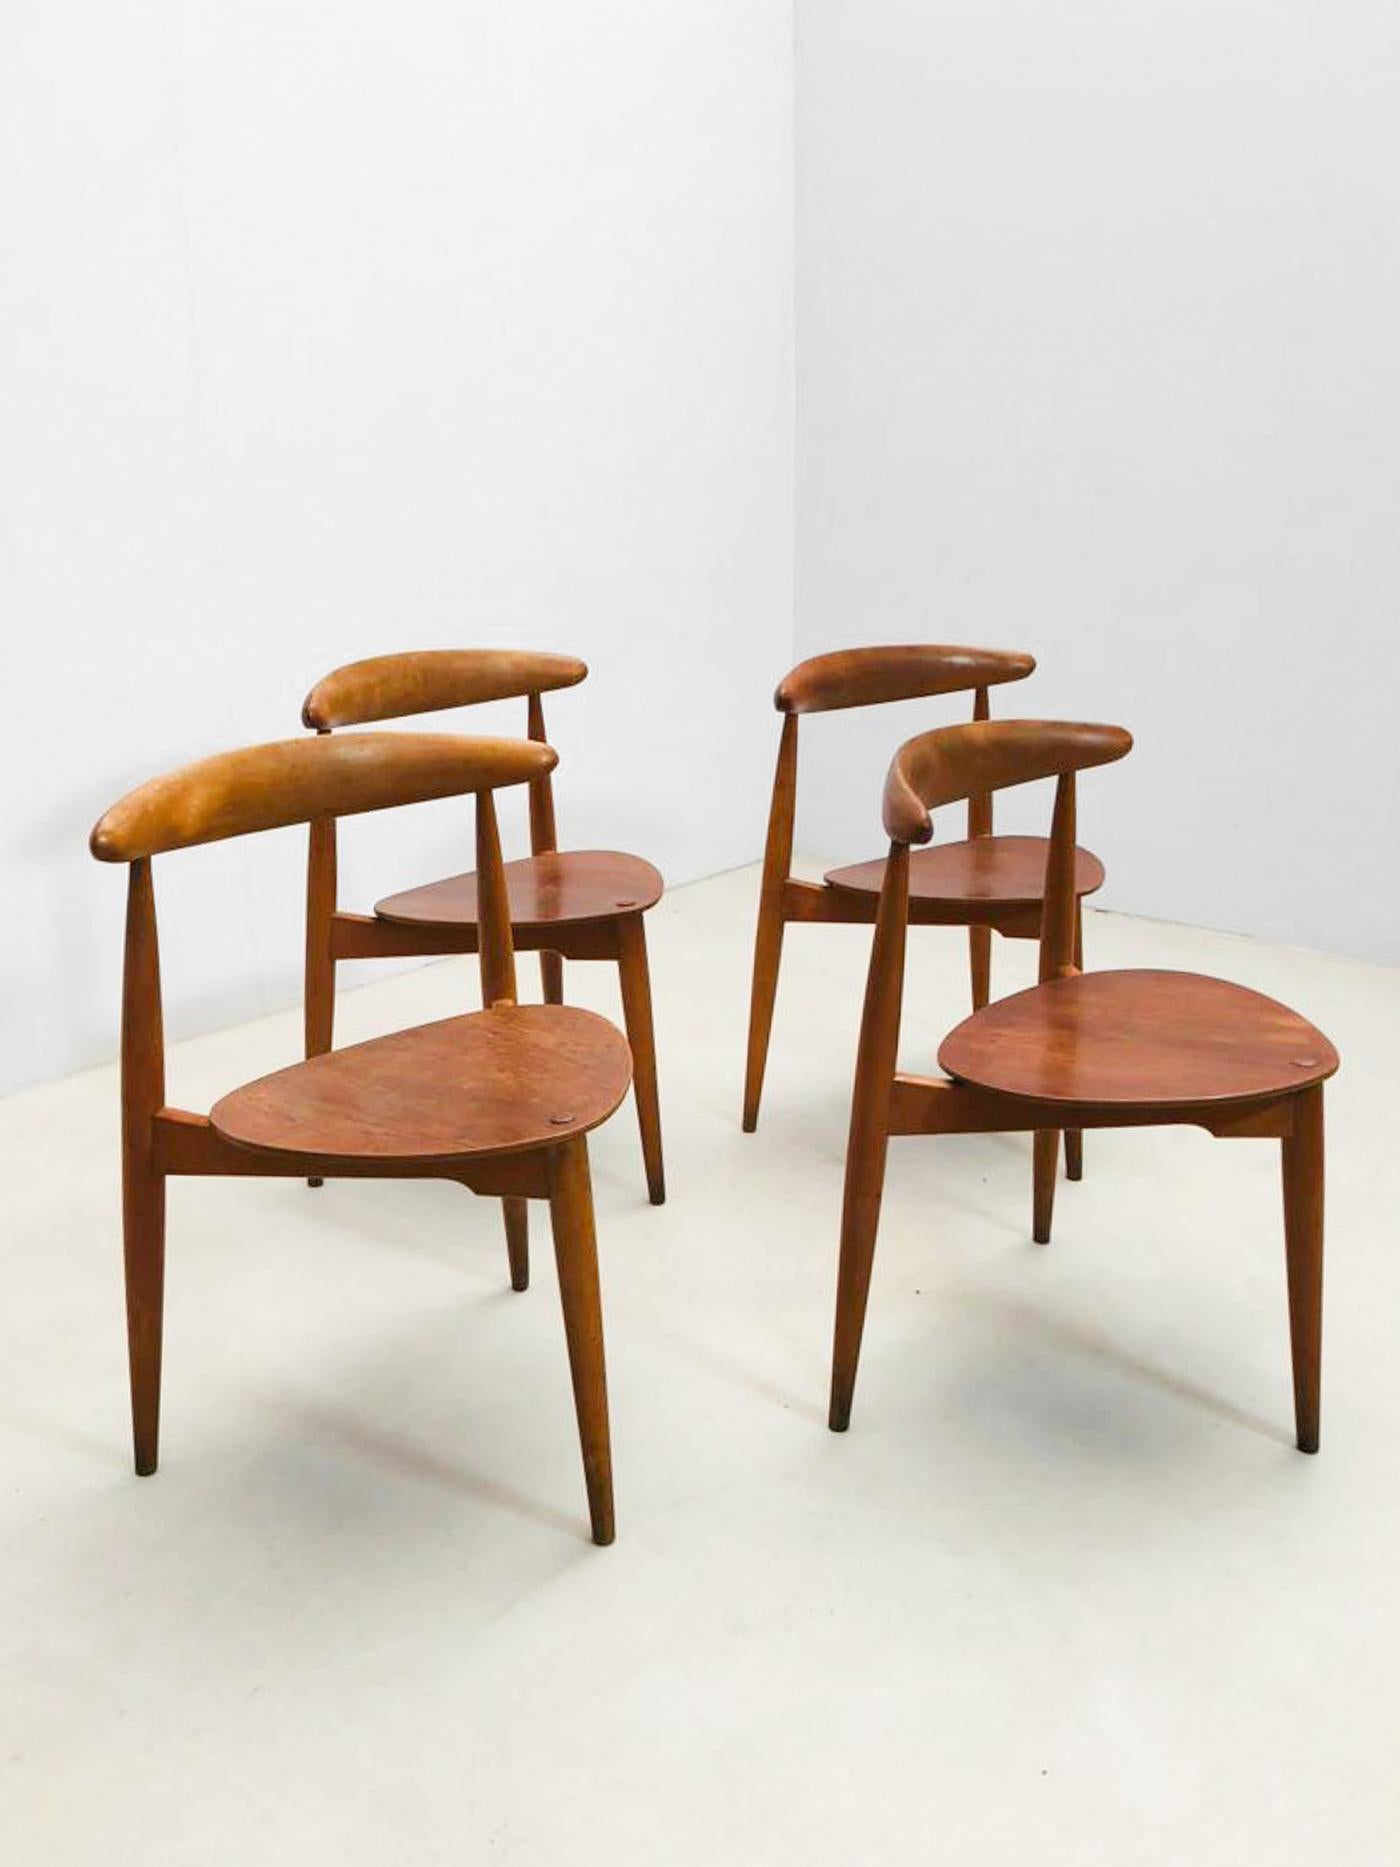 Satz von 4 'FH4103' Dreibeinstühlen, von dem berühmten Hans J. Wegner für Fritz Hansen in den 1950er Jahren.
Diese ikonischen Stühle werden wegen ihrer unverwechselbaren Silhouette liebevoll 